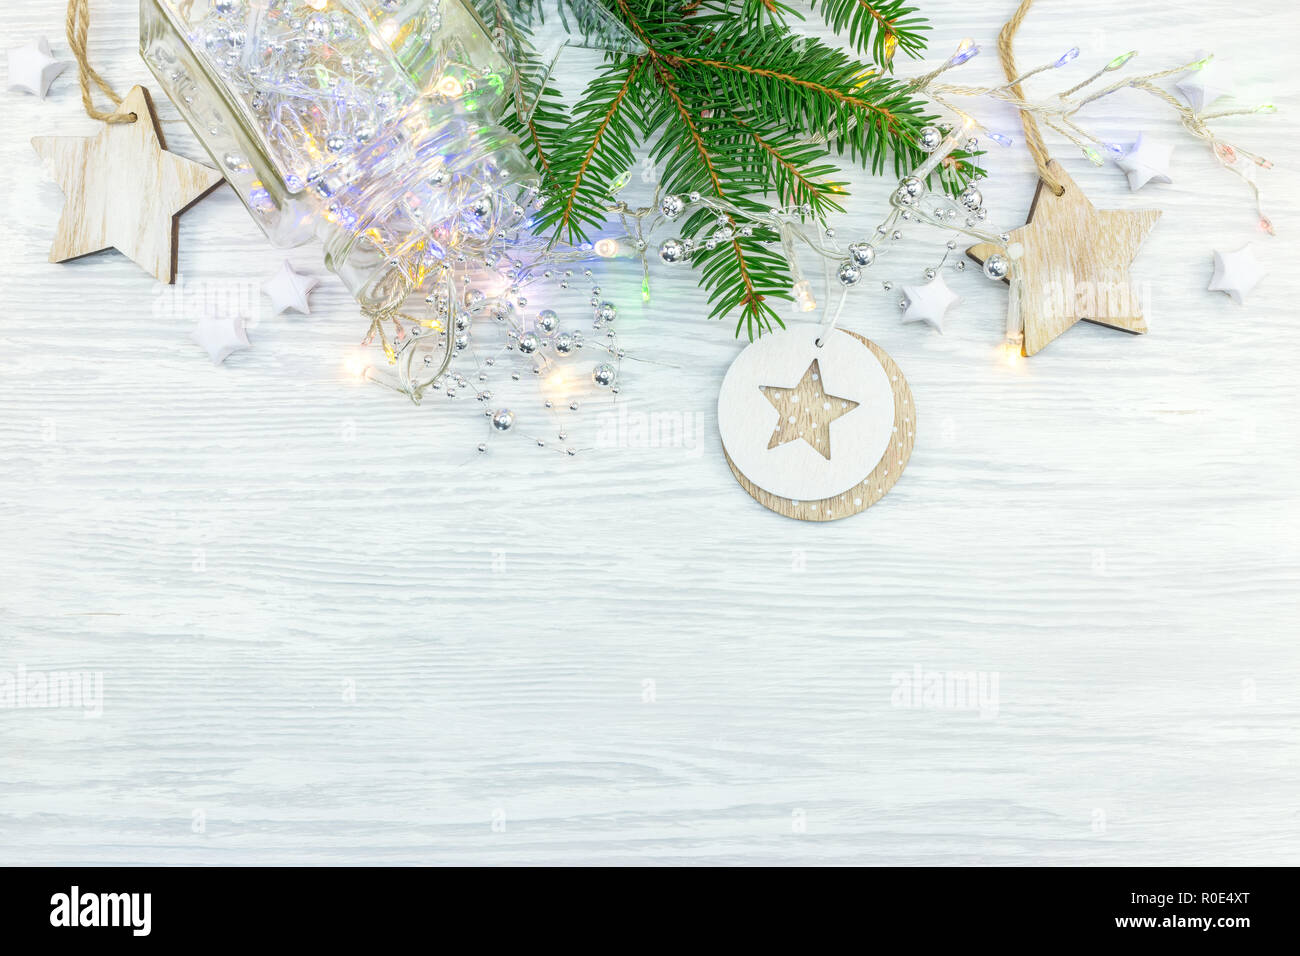 Handgefertigten Holzmöbeln Dekorationen für den Weihnachtsbaum, Tanne Baum und Lichter Girlande auf Holz Hintergrund Stockfoto